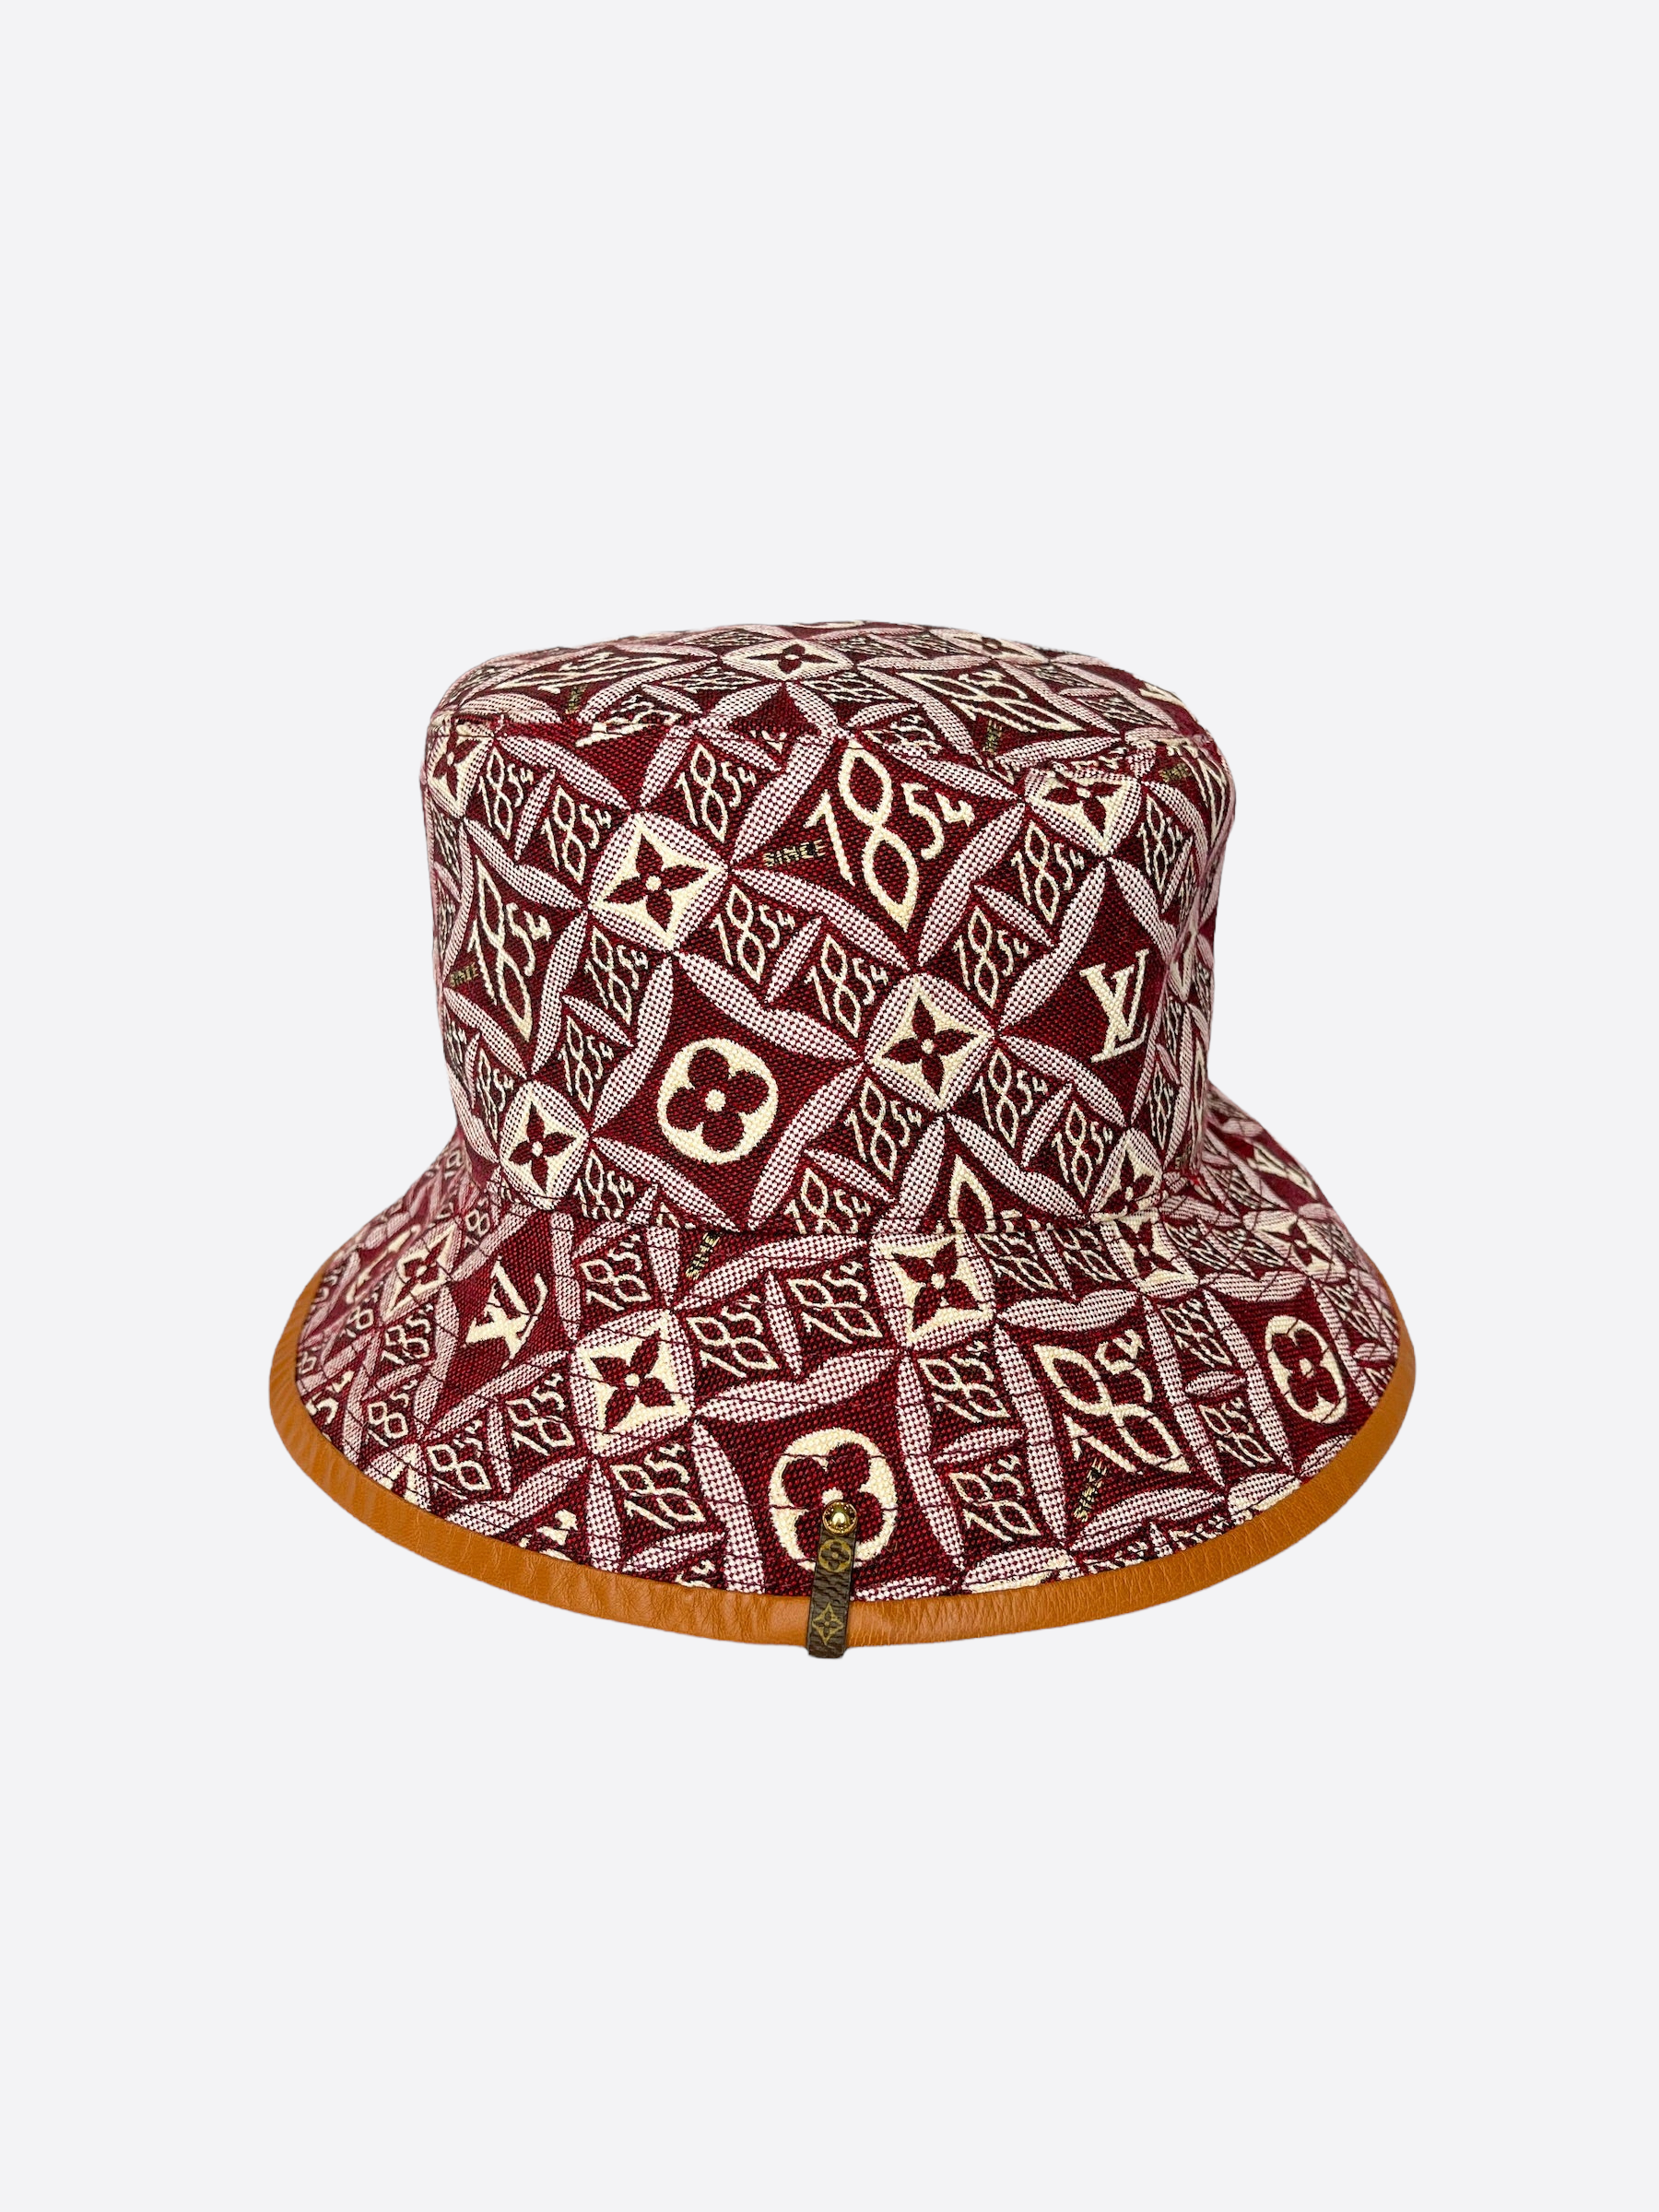 Louis Vuitton Red 1854 Bucket Hat